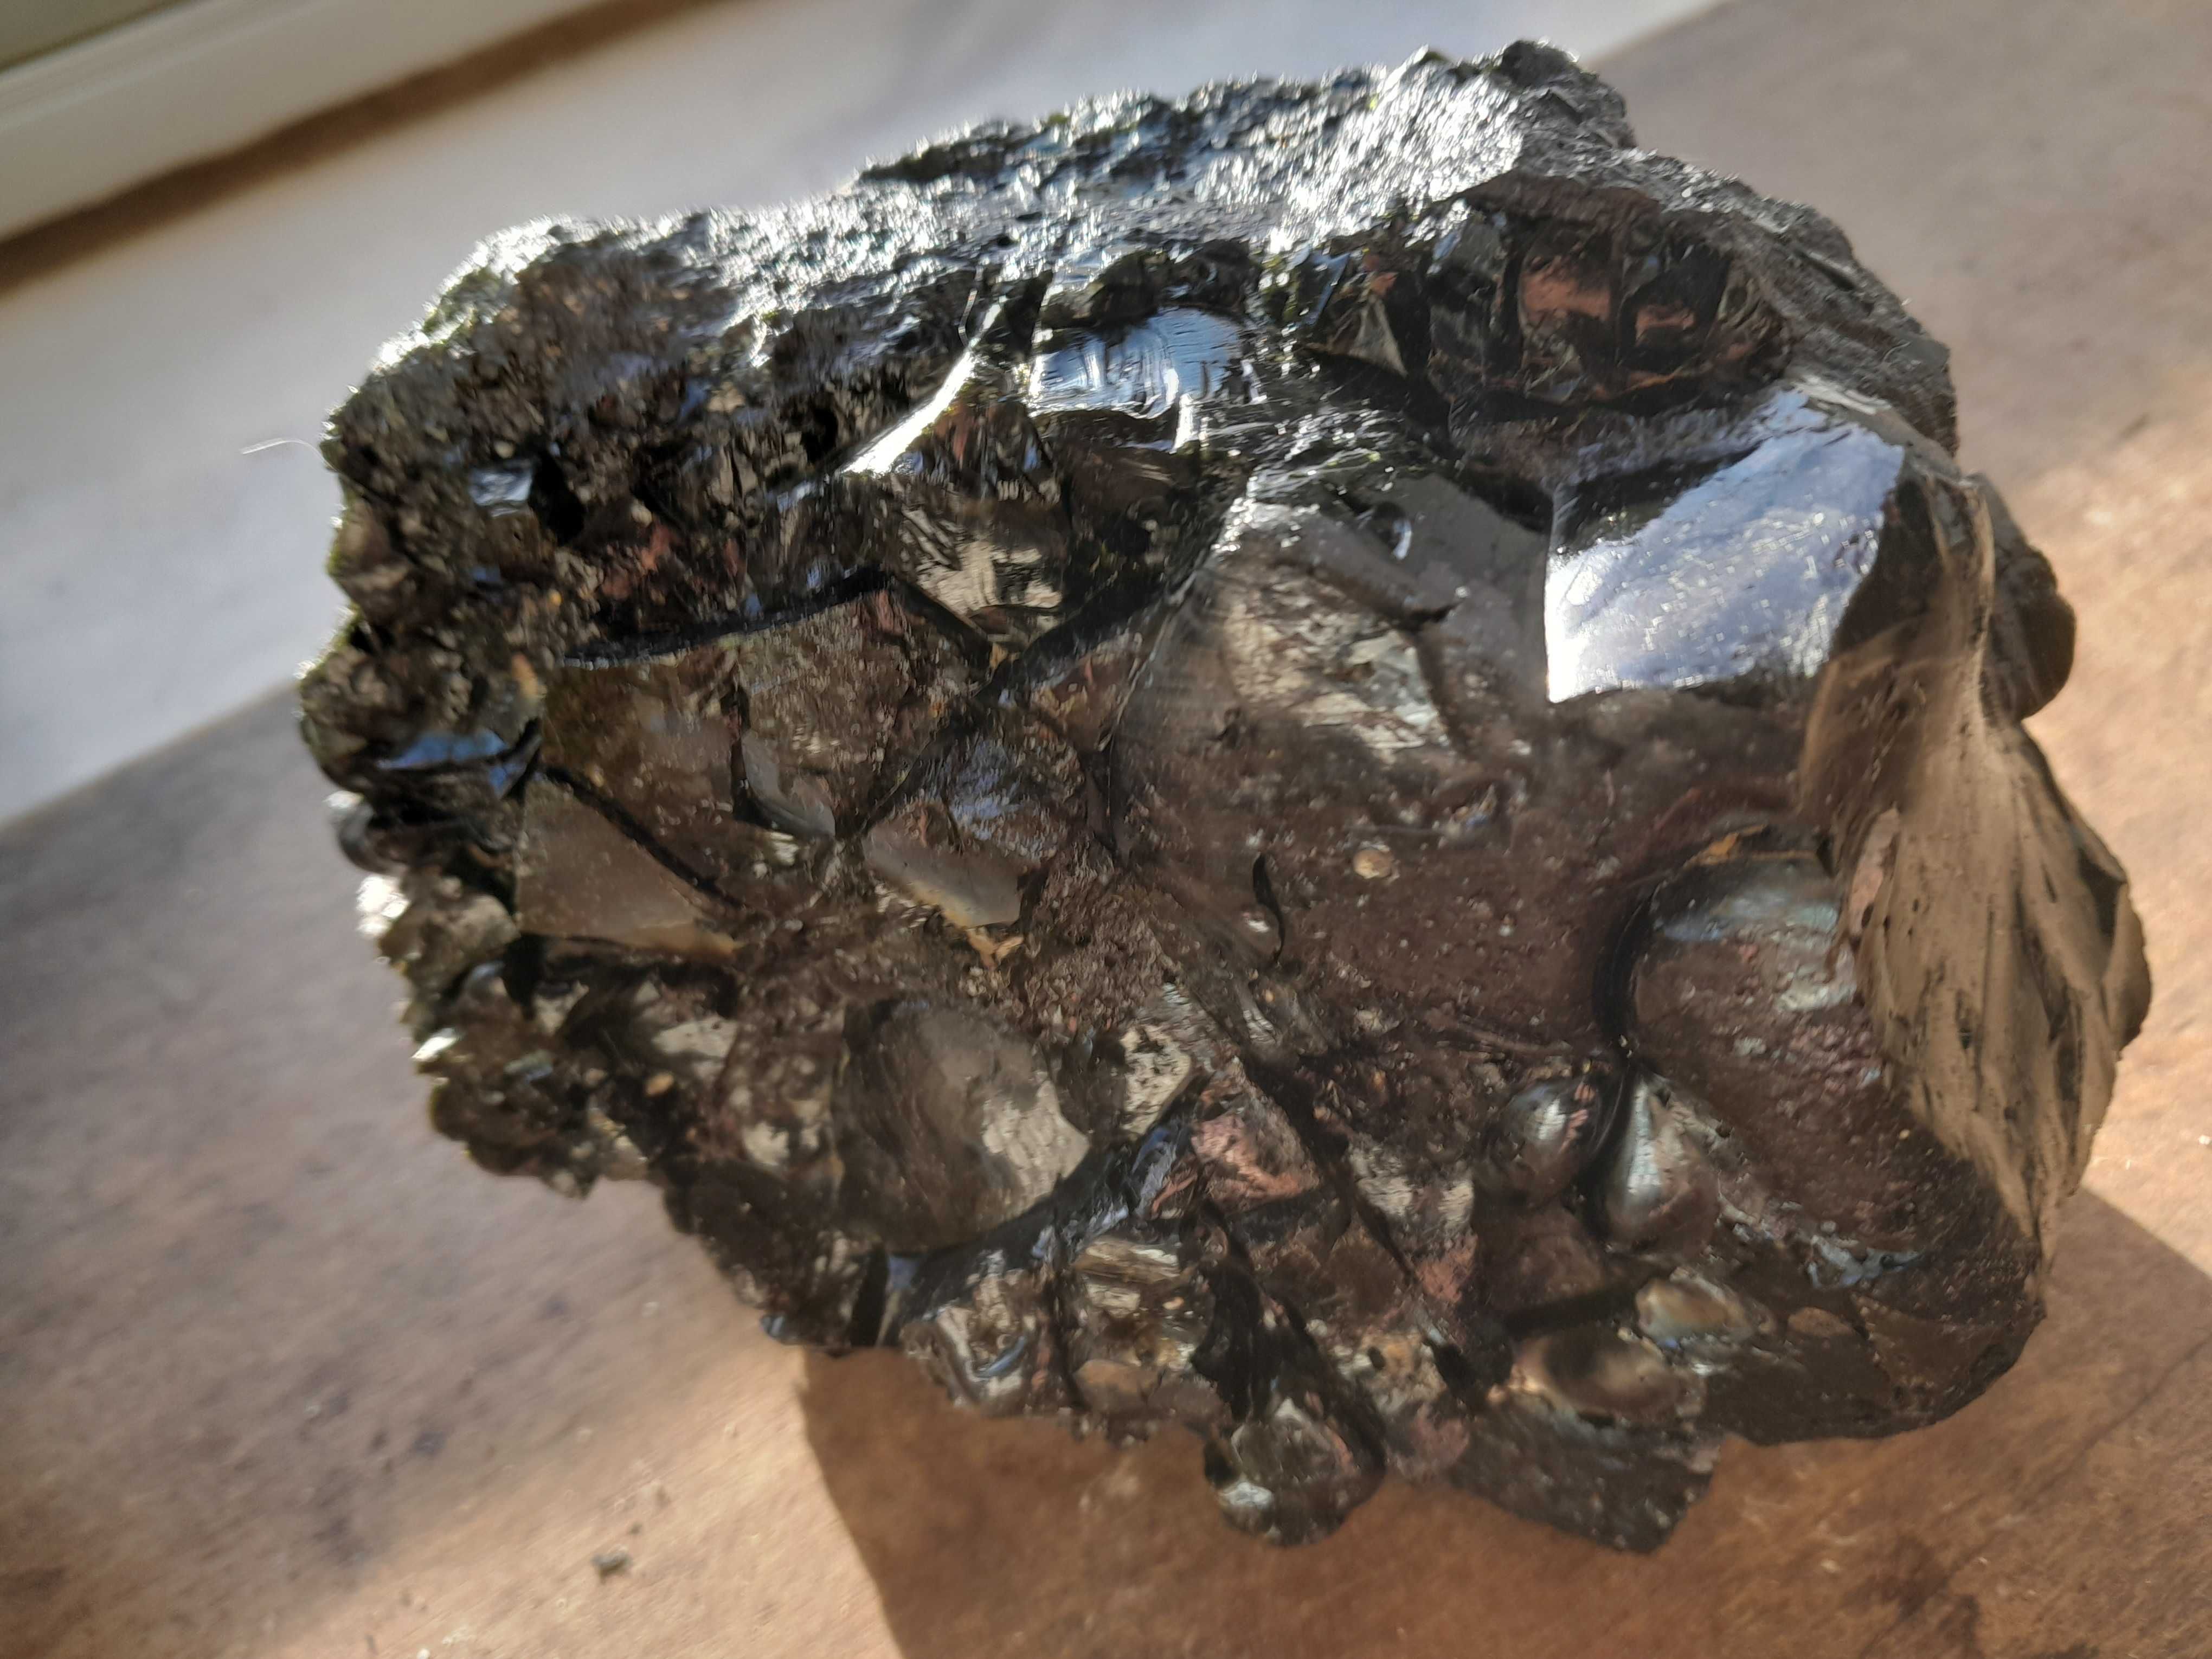 Pedra preciosa Turmalina negra e cristalizadoa